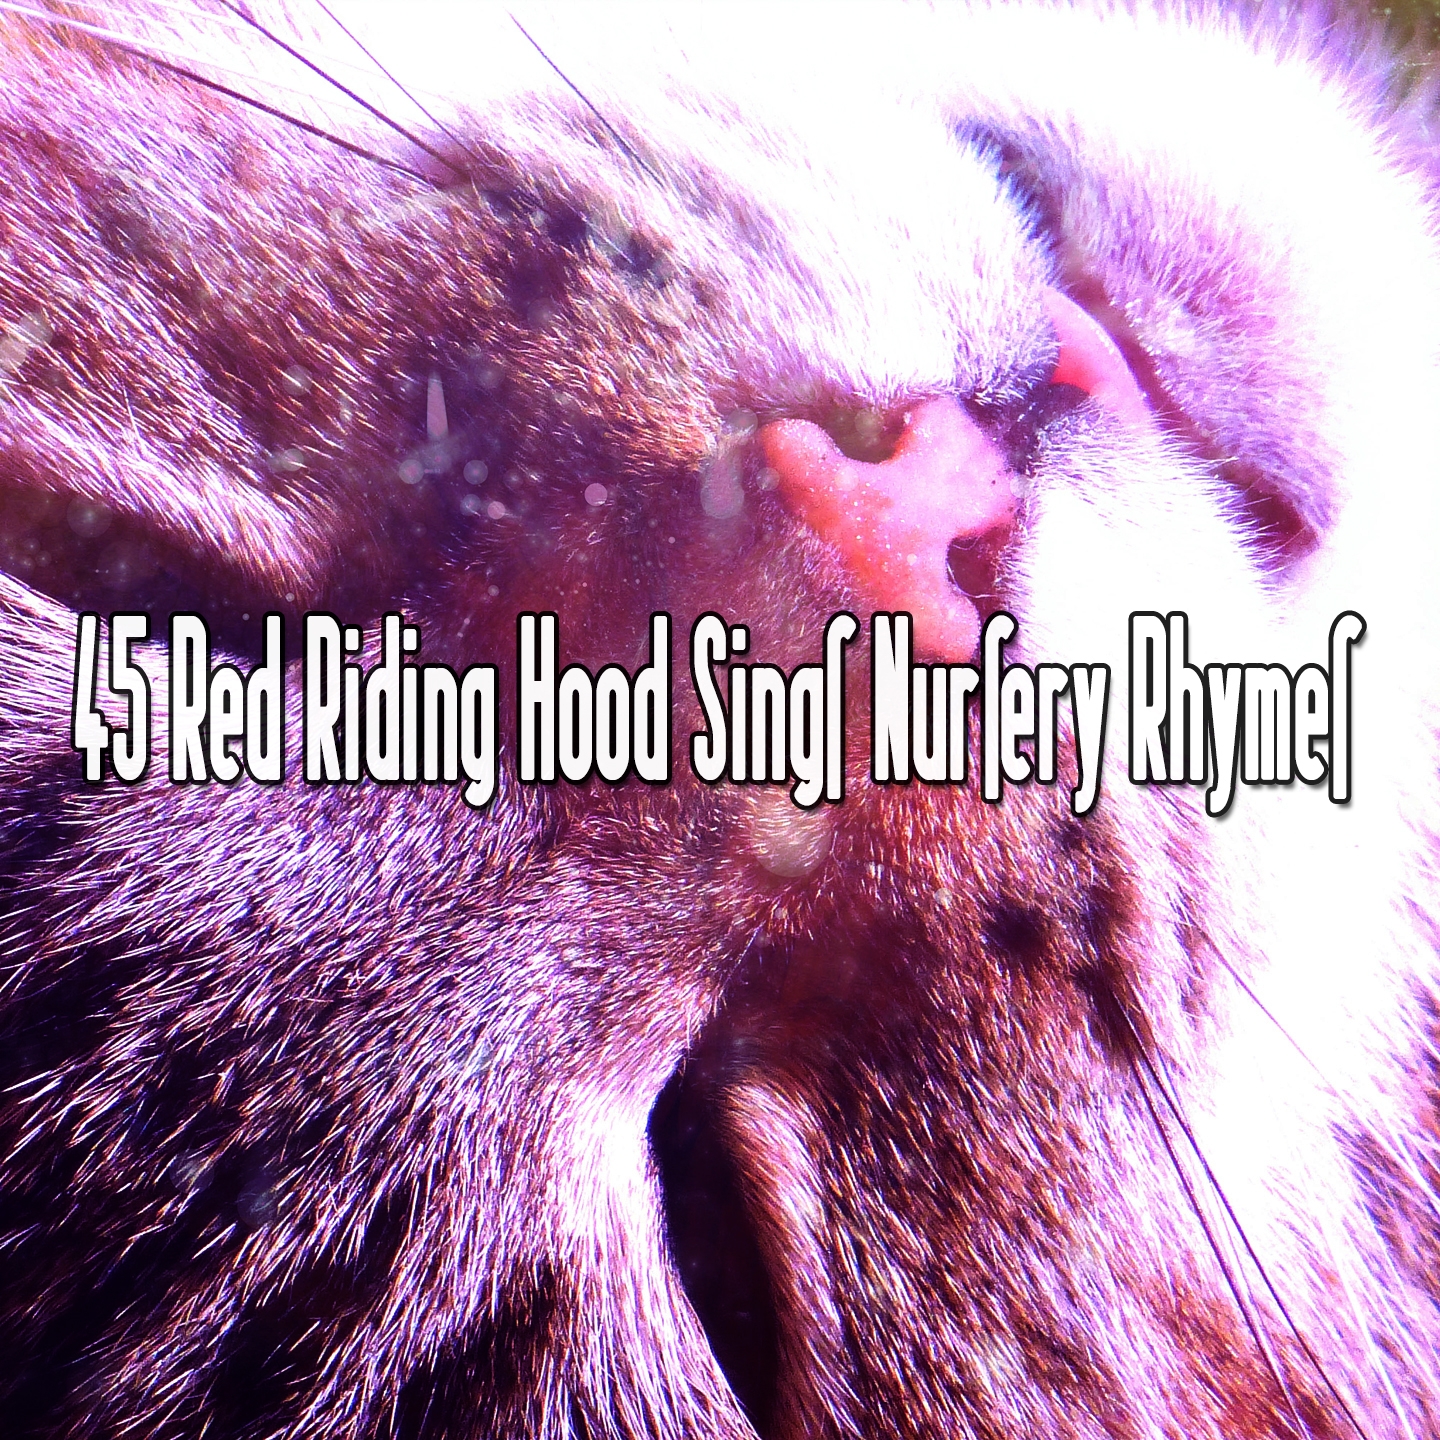 45 Red Riding Hood Sings Nursery Rhymes